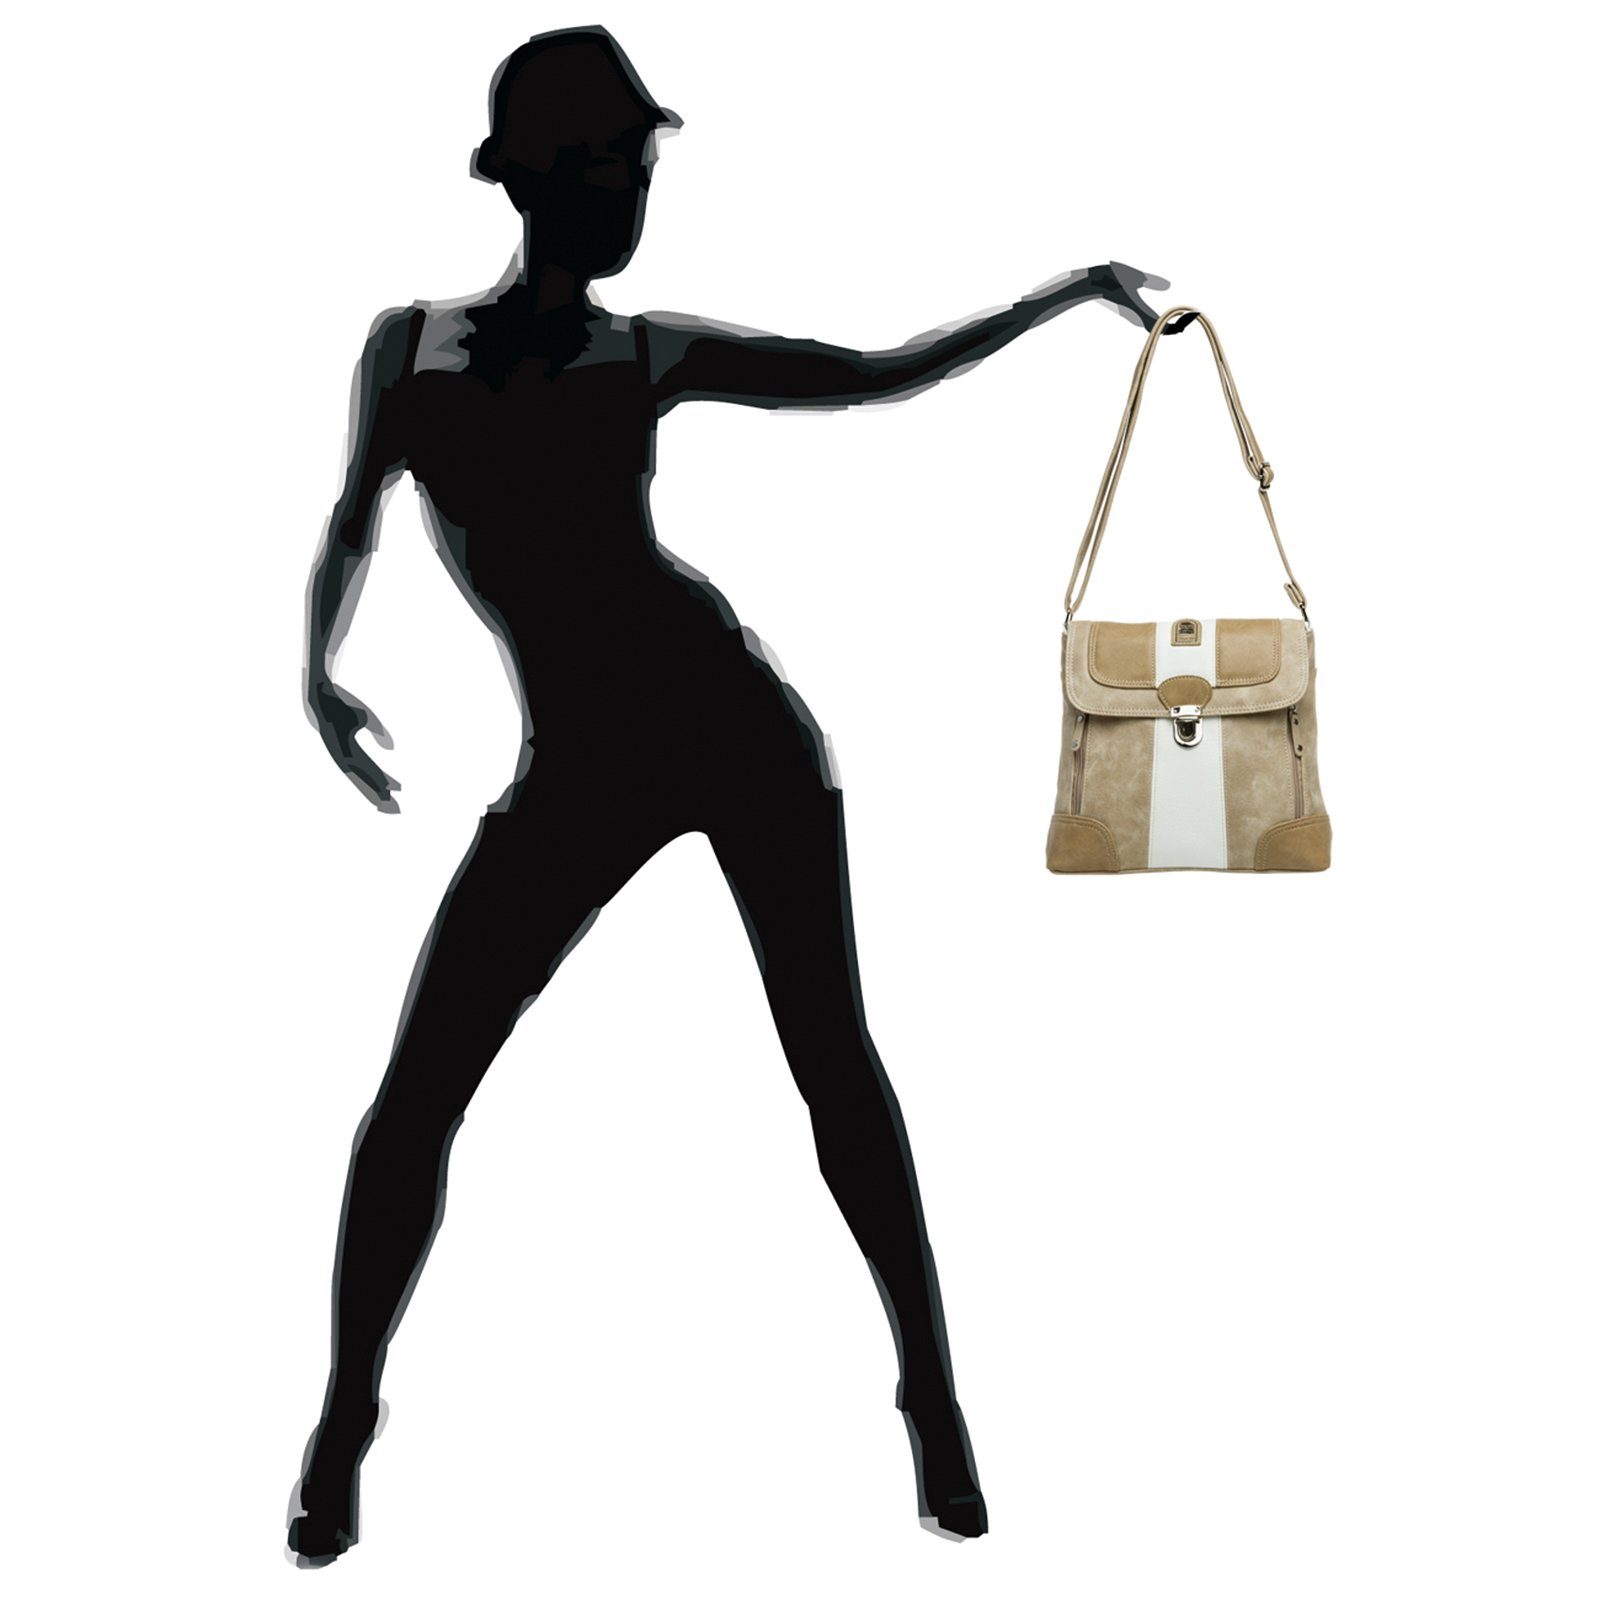 weiß Umhängetasche Rucksack Caspar Tasche Umhängetasche Modelle - diverse beige Damen Handtasche Umhängetasche #3851 TS1028